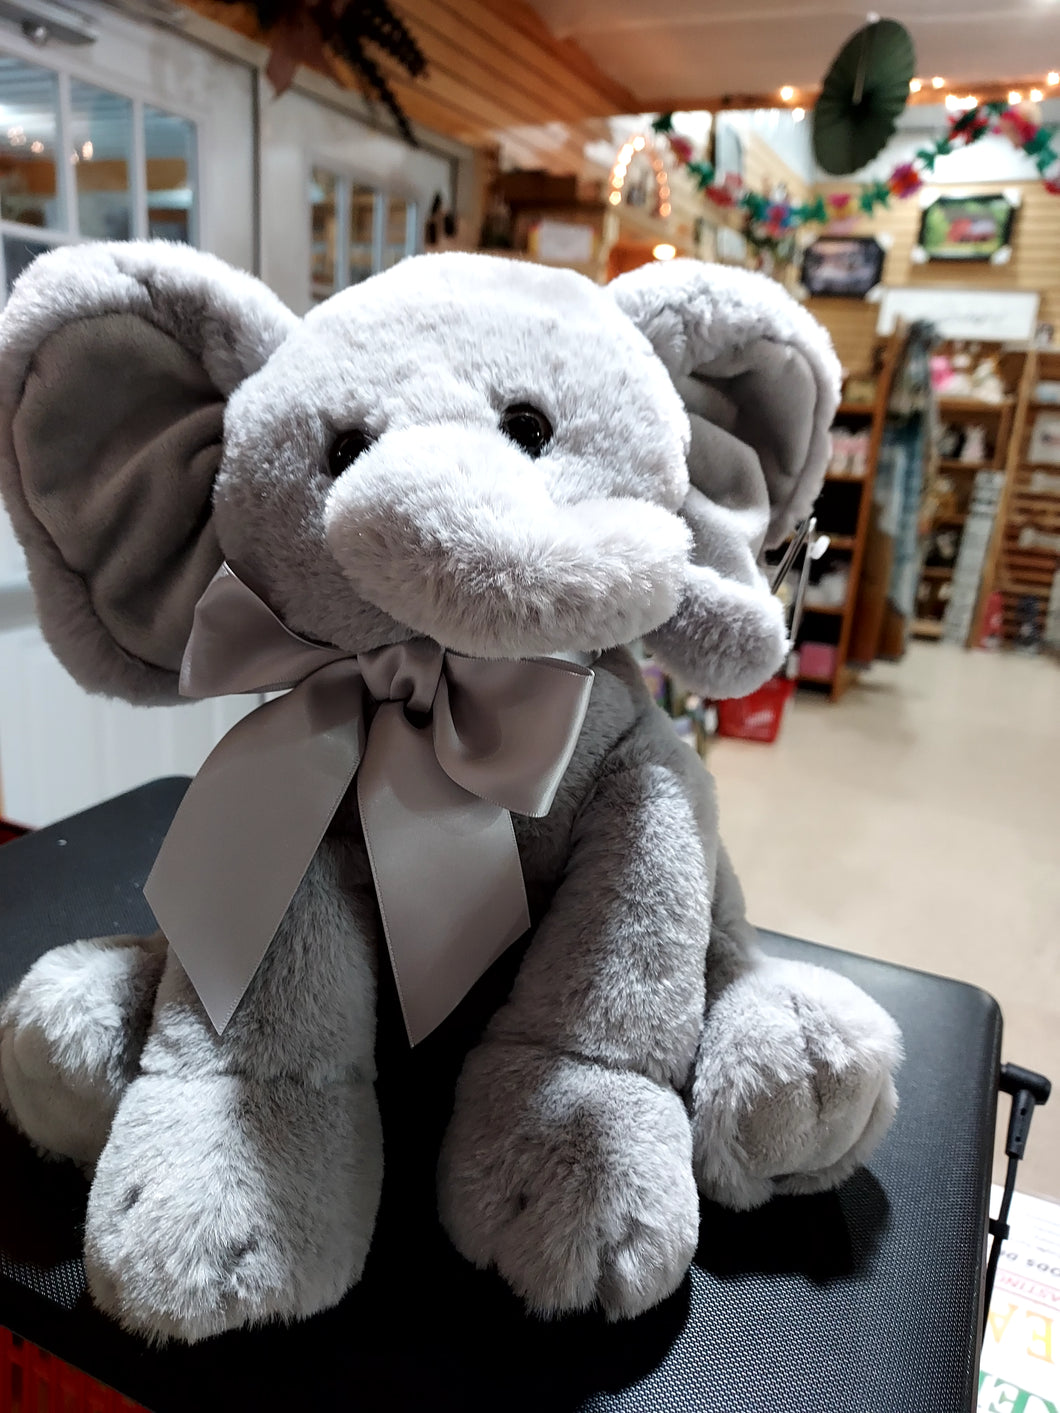 Plush toy Elephant